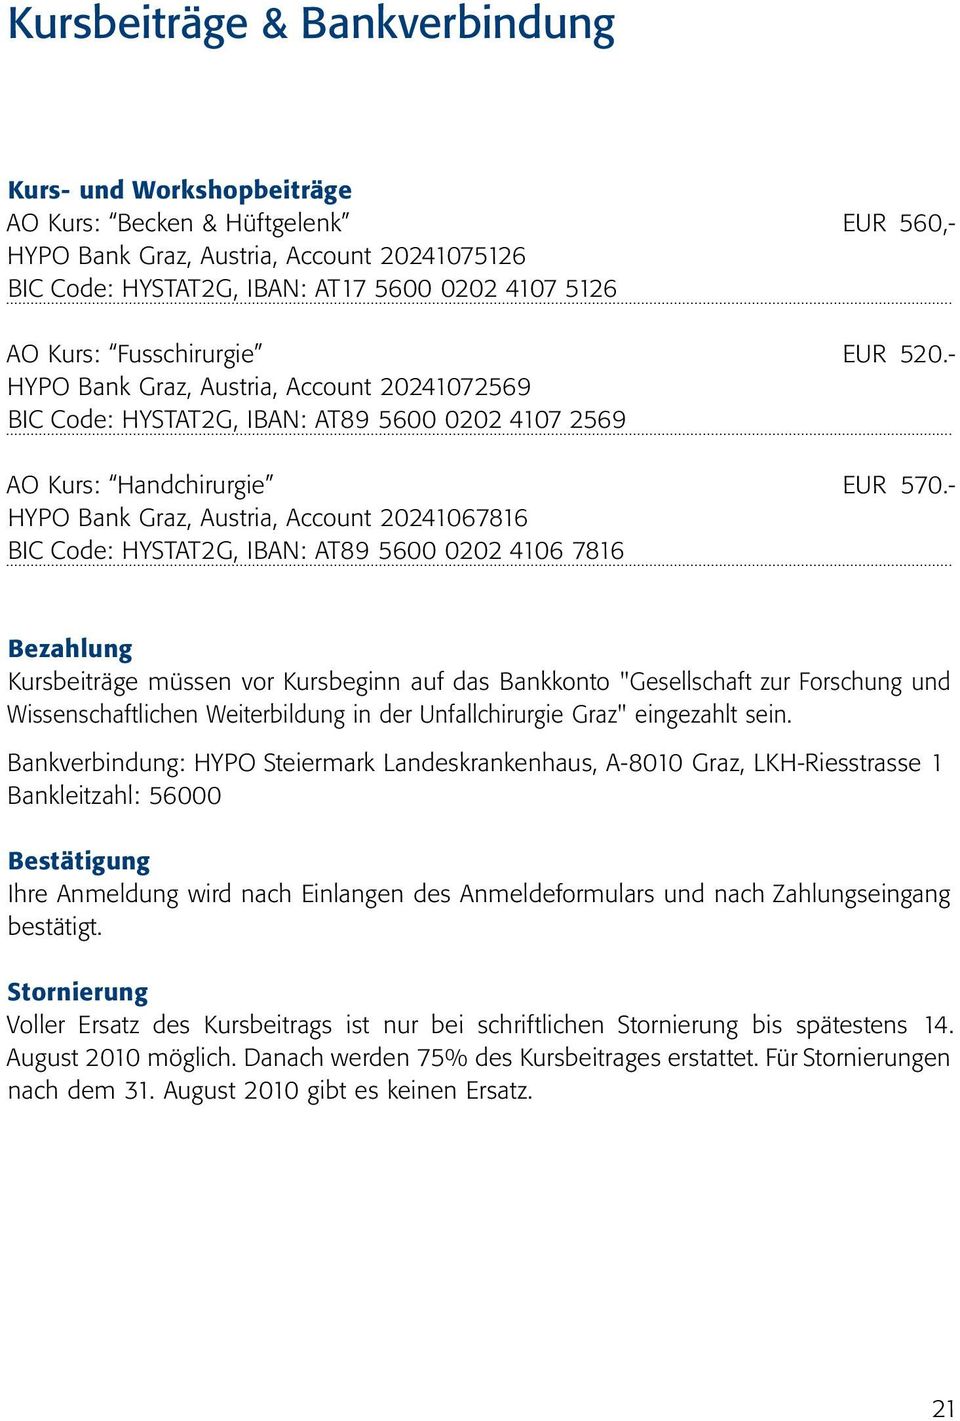 - HYPO Bank Graz, Austria, Account 20241067816 BIC Code: HYSTAT2G, IBAN: AT89 5600 0202 4106 7816 Bezahlung Kursbeiträge müssen vor Kursbeginn auf das Bankkonto "Gesellschaft zur Forschung und